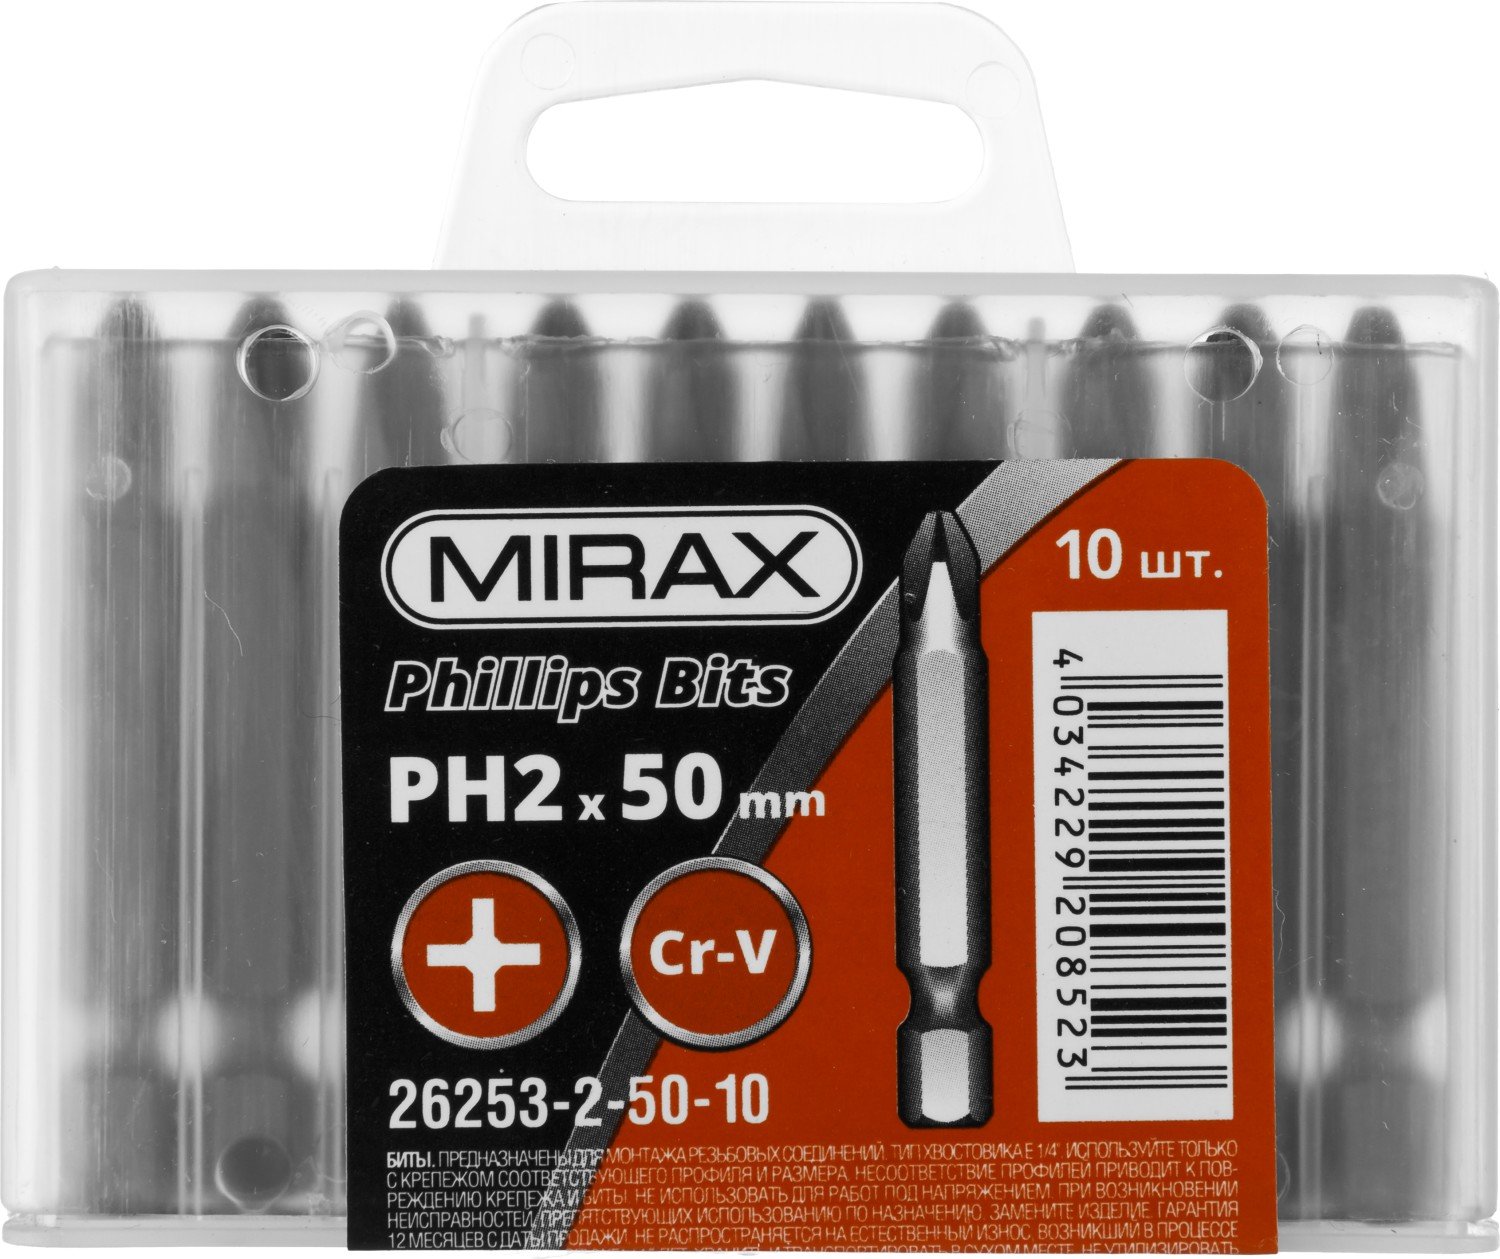   MIRAX PH2 50  10 . (26253-2-50-10)